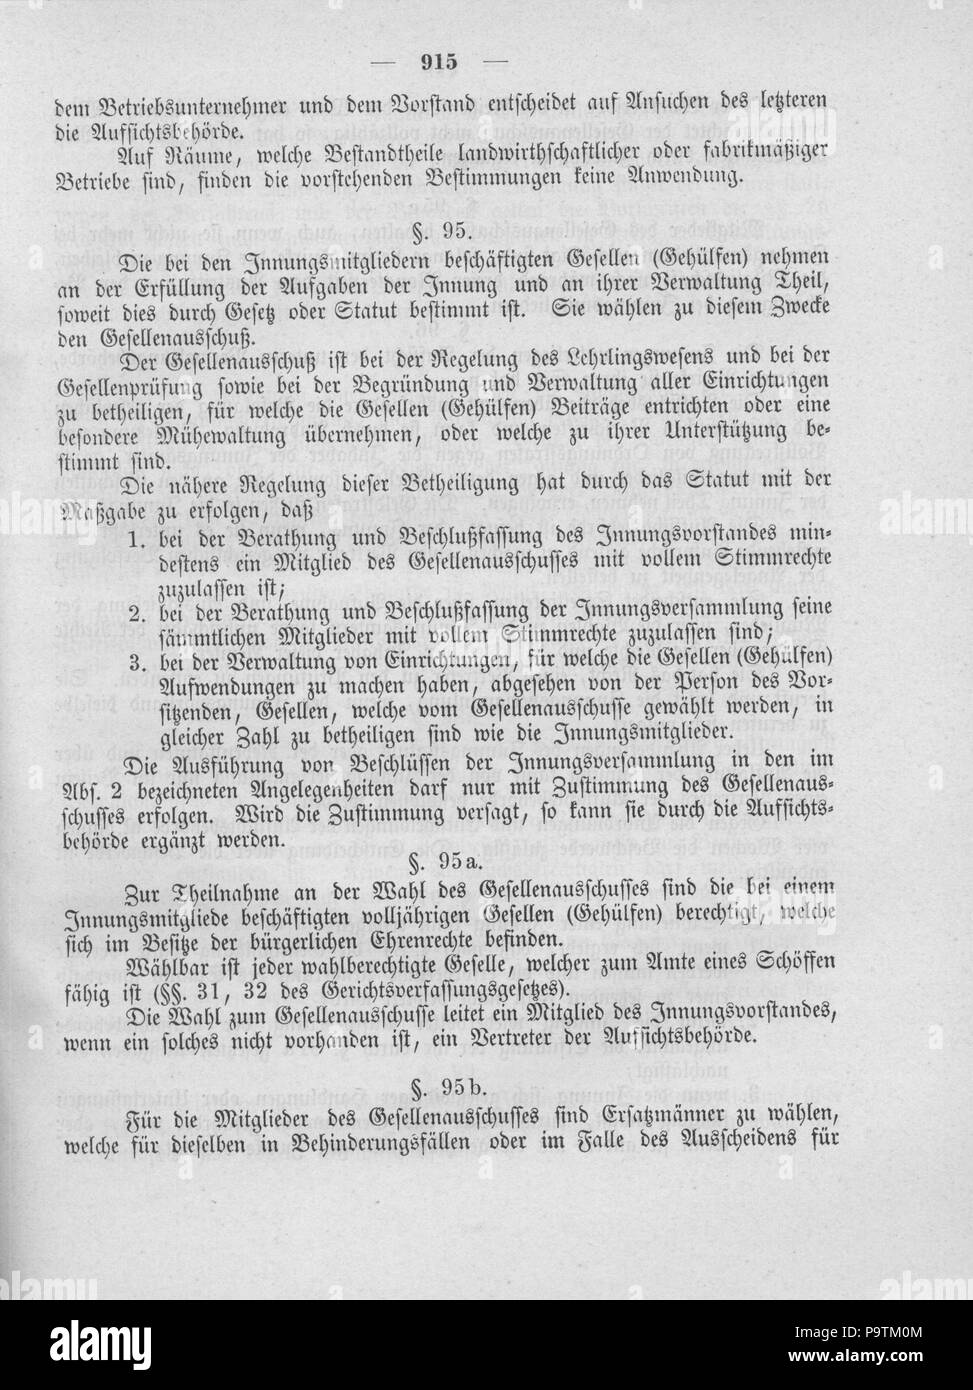 402 Deutsches Reichsgesetzblatt 1900 047 0915 Stock Photo